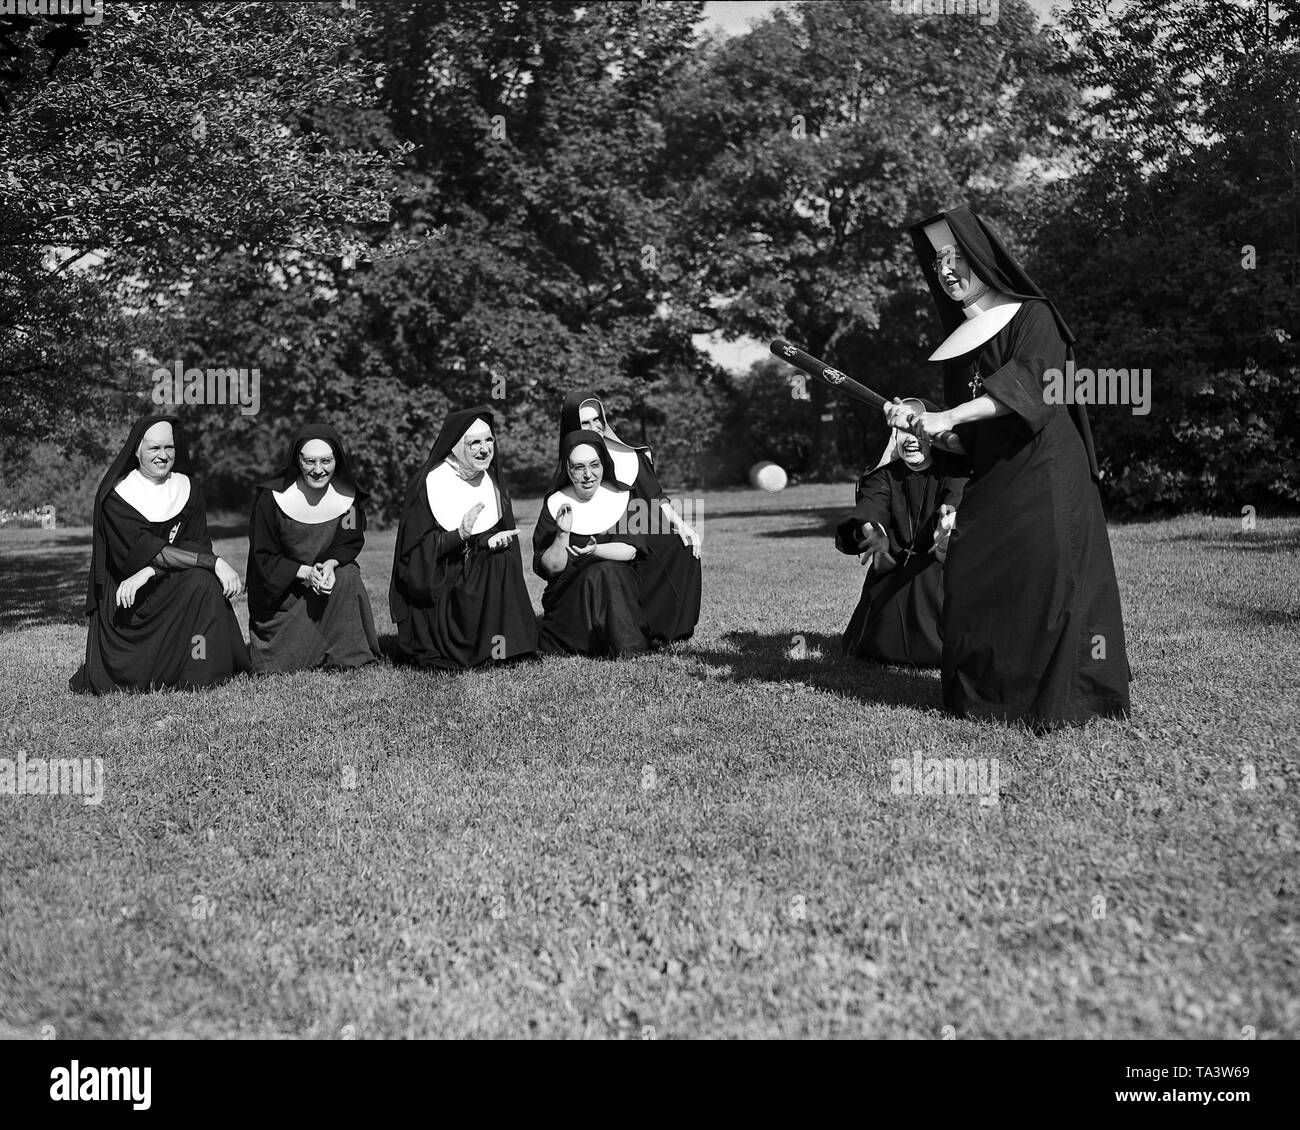 Les religieuses jouent au base-ball que les loisirs à Chicago, IL, 1954. Libre à partir de 4x5 pouce négatif de l'appareil photo. Banque D'Images